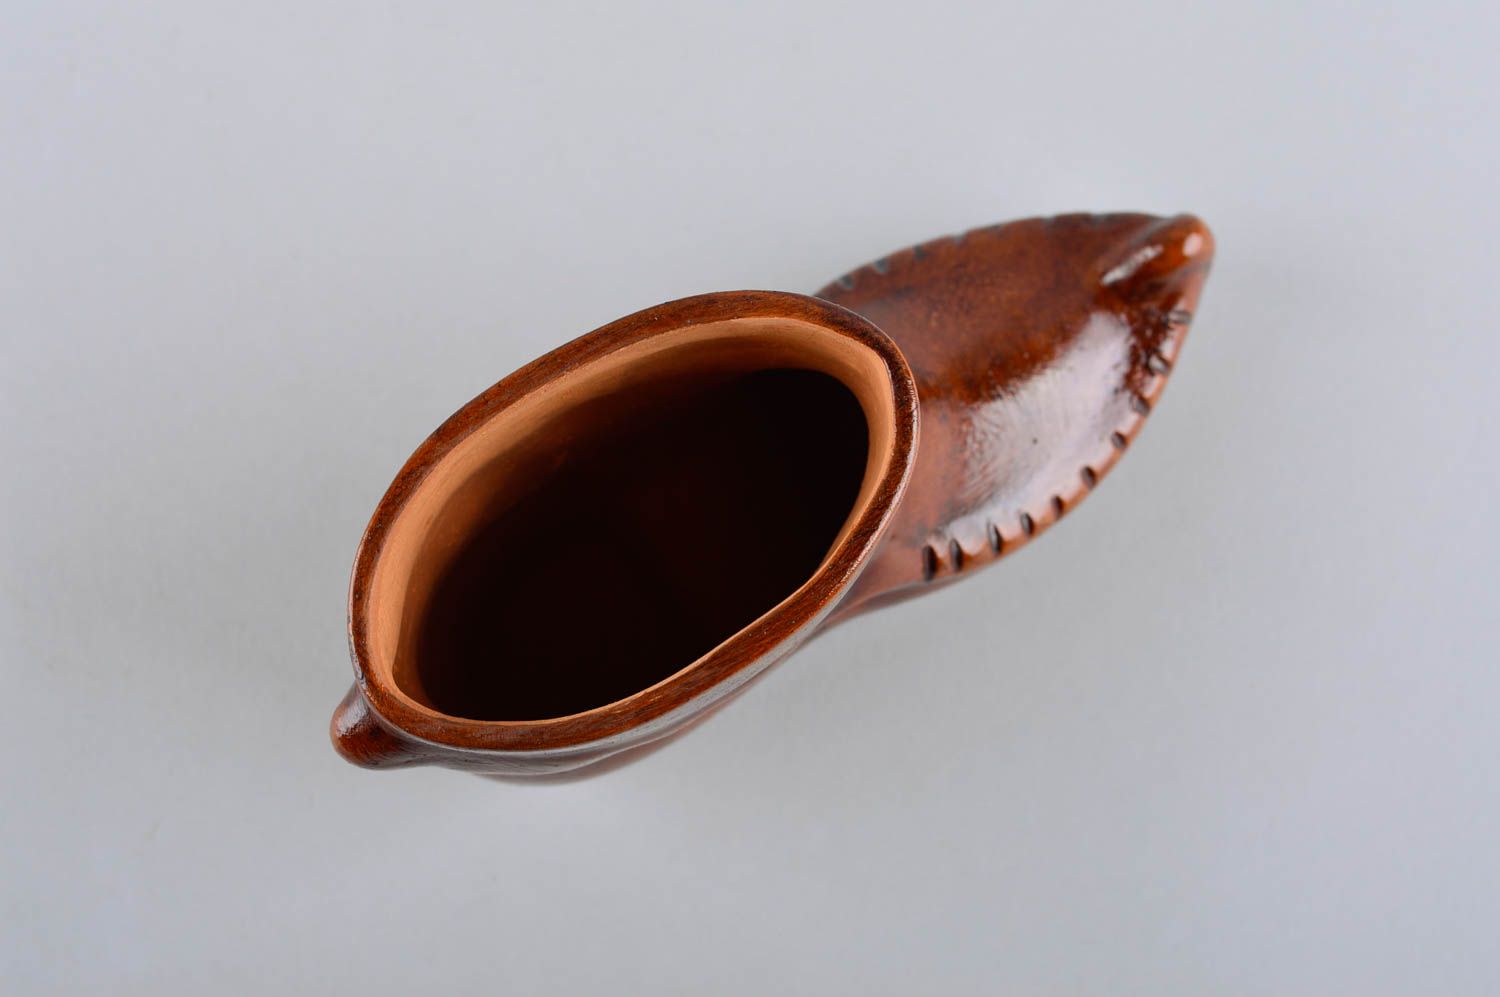 8 oz decorative boot shape ceramic brown vessel for home décor 0,5 lb photo 5